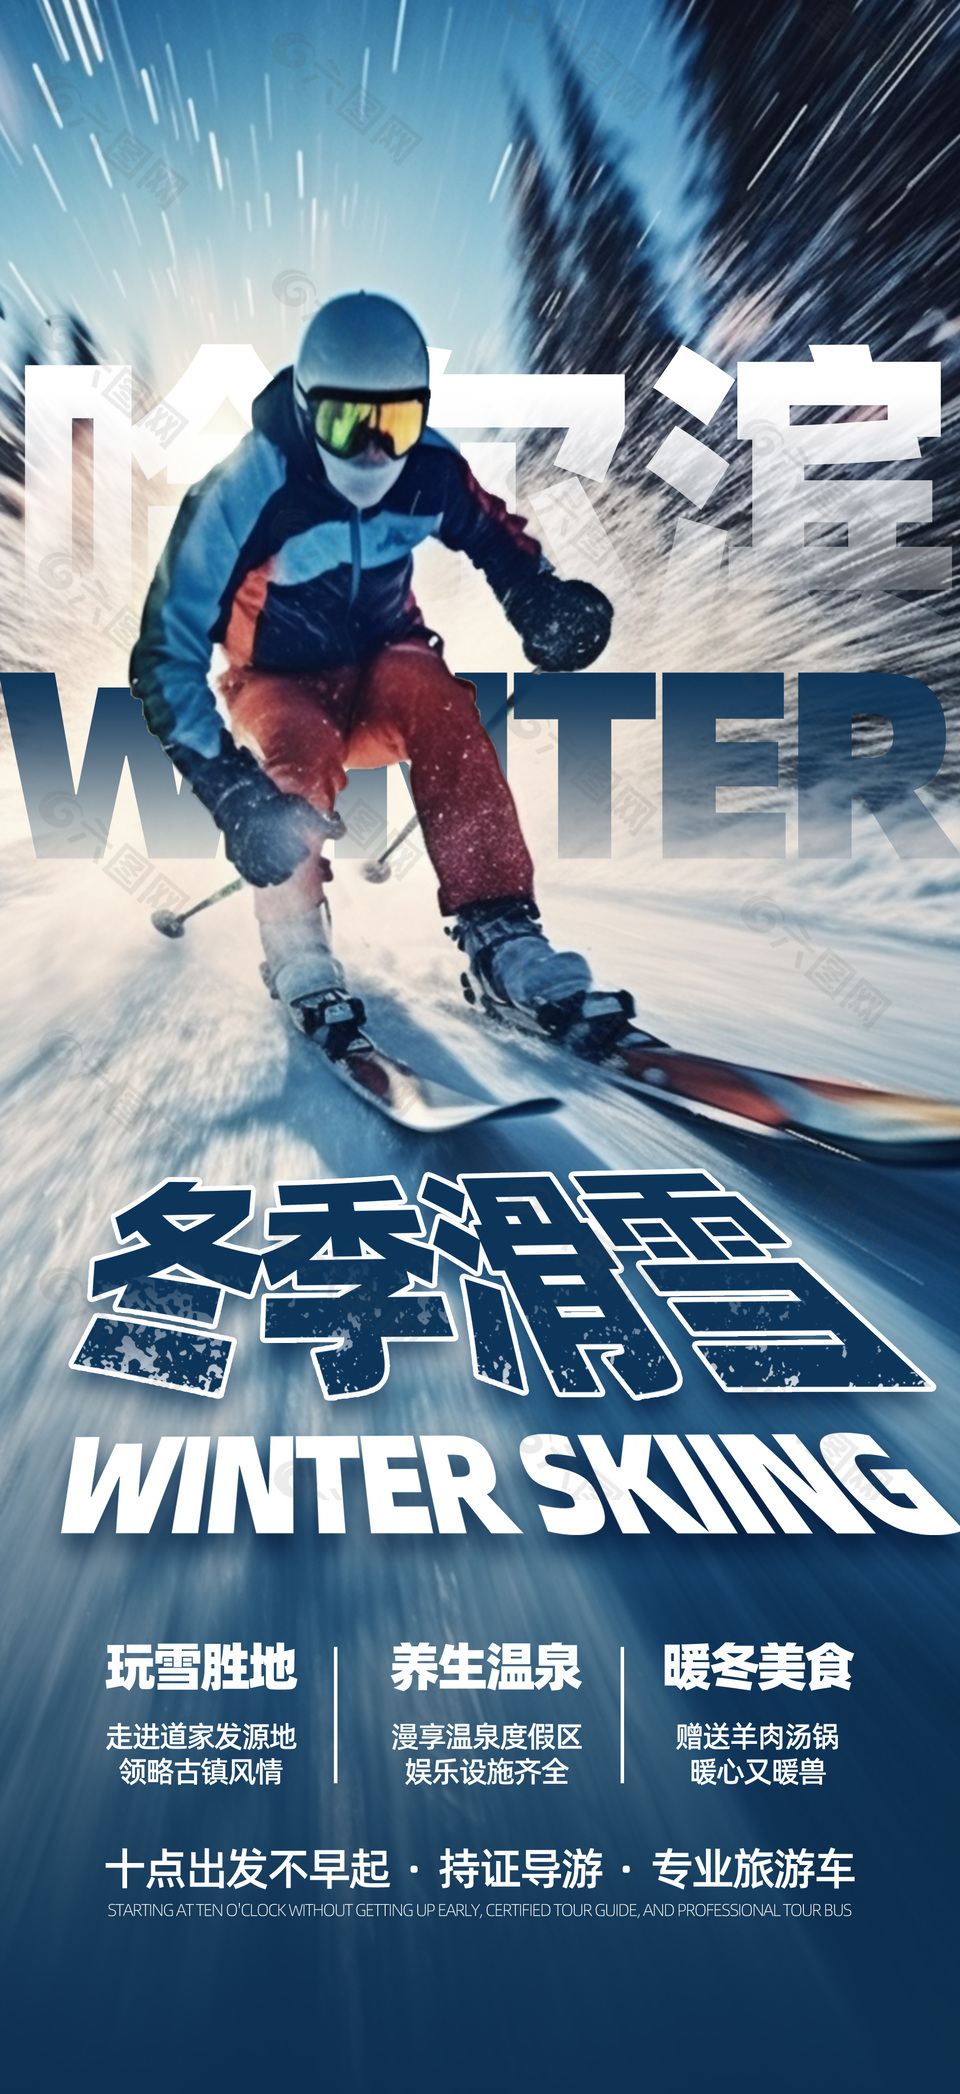 冬季滑雪简约旅行社宣传营销海报